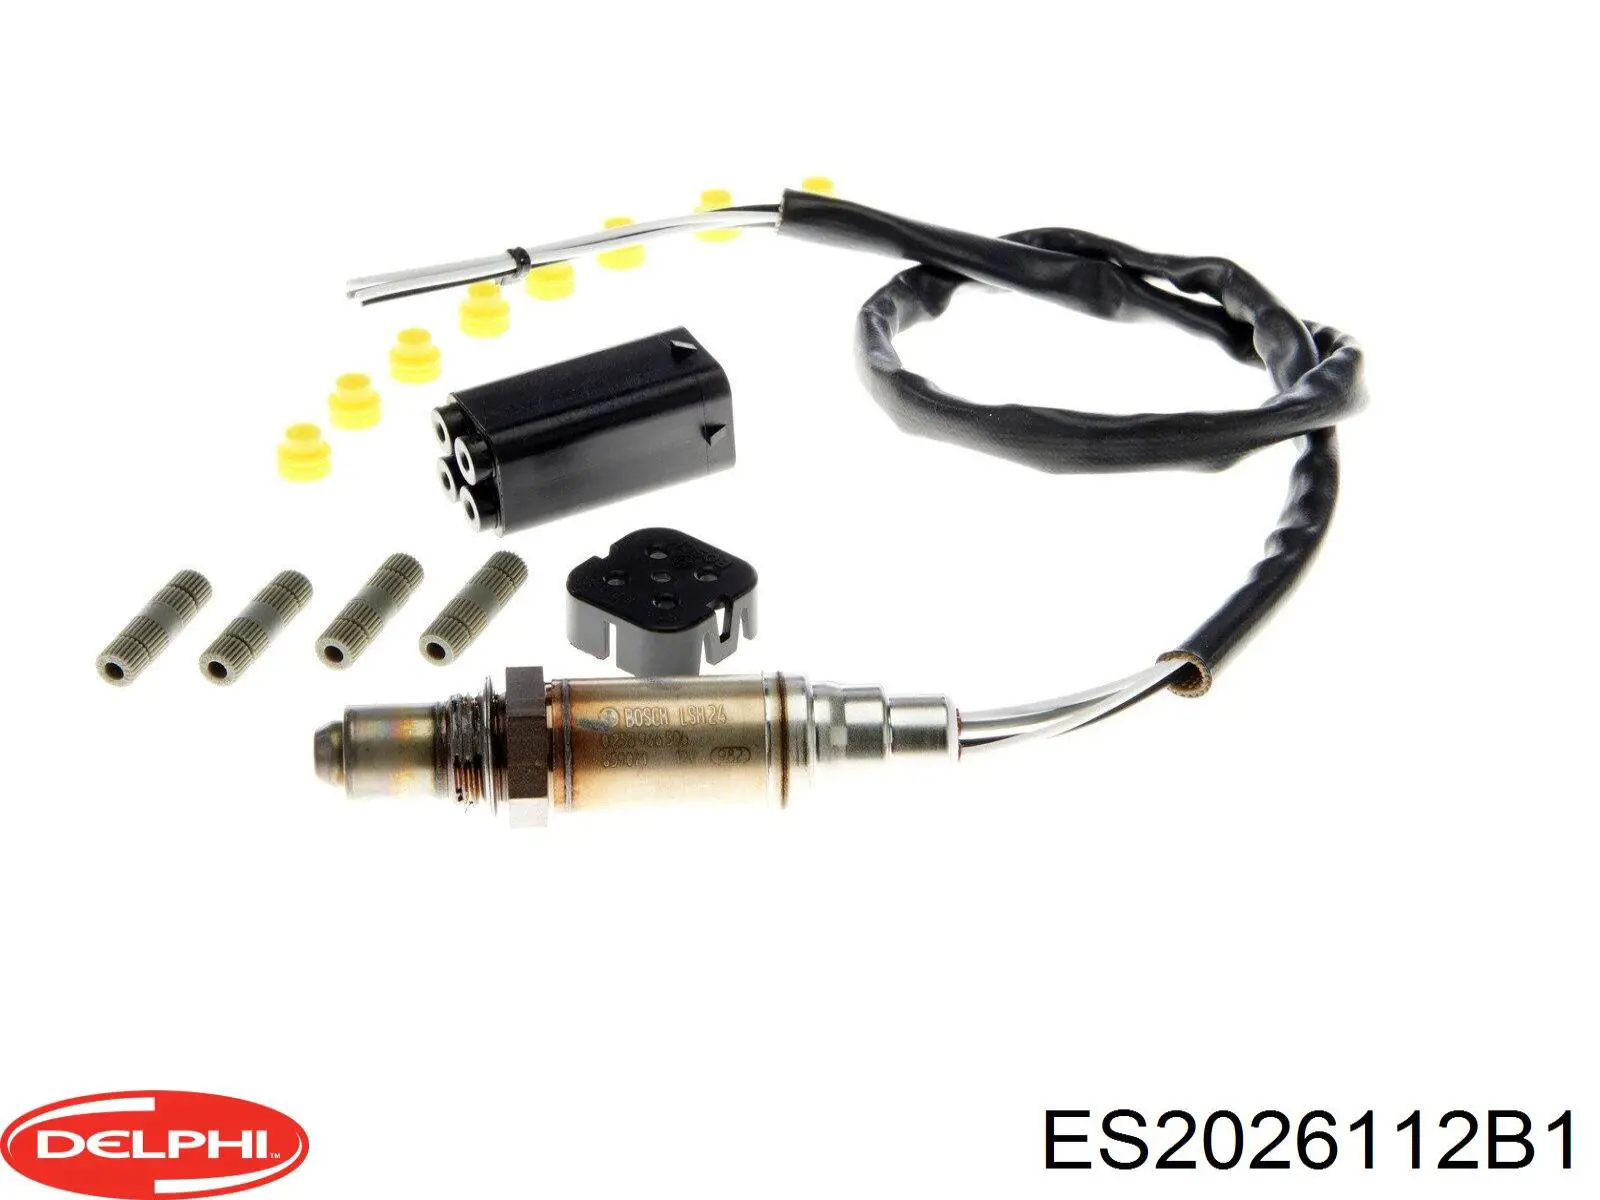 ES20261-12B1 Delphi sonda lambda sensor de oxigeno para catalizador